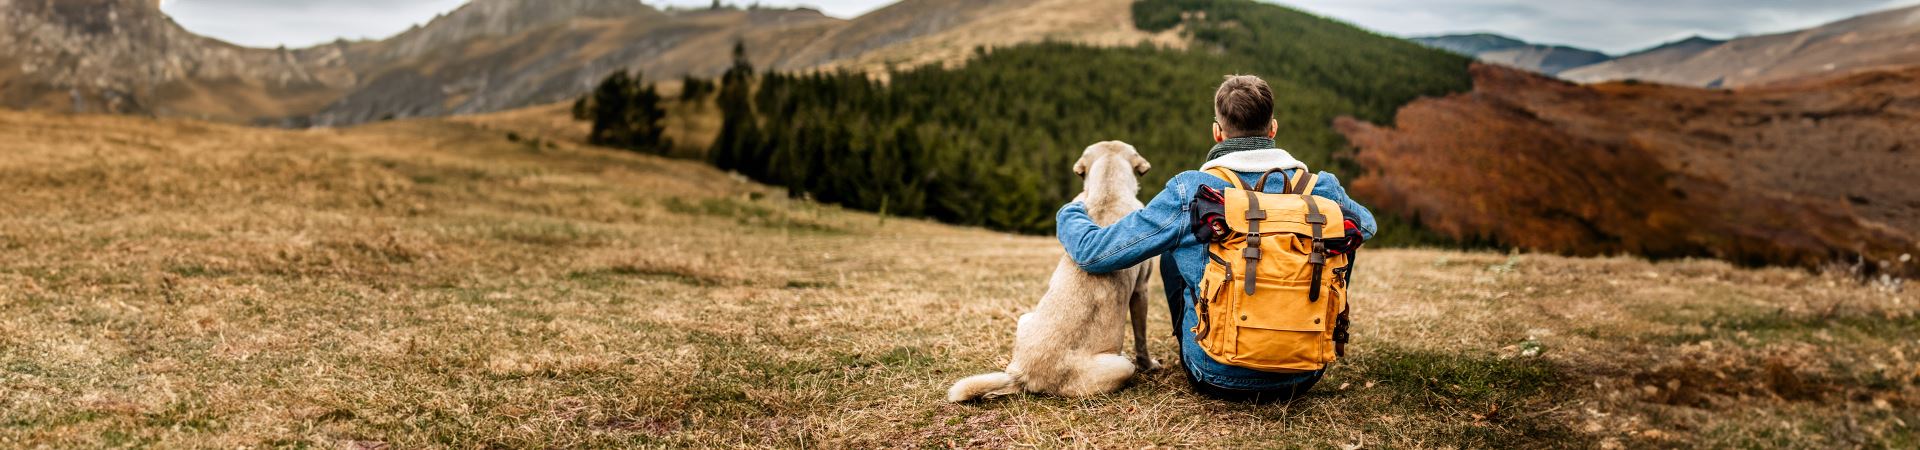 La imagen muestra a un chico de espaldas, sentado, y a su lado está sentado un perro grande. Los dos disfrutan de las vistas de las densas montañas. El chico lleva una mochila a la espalda y su brazo izquierdo se apoya sobre el perro.